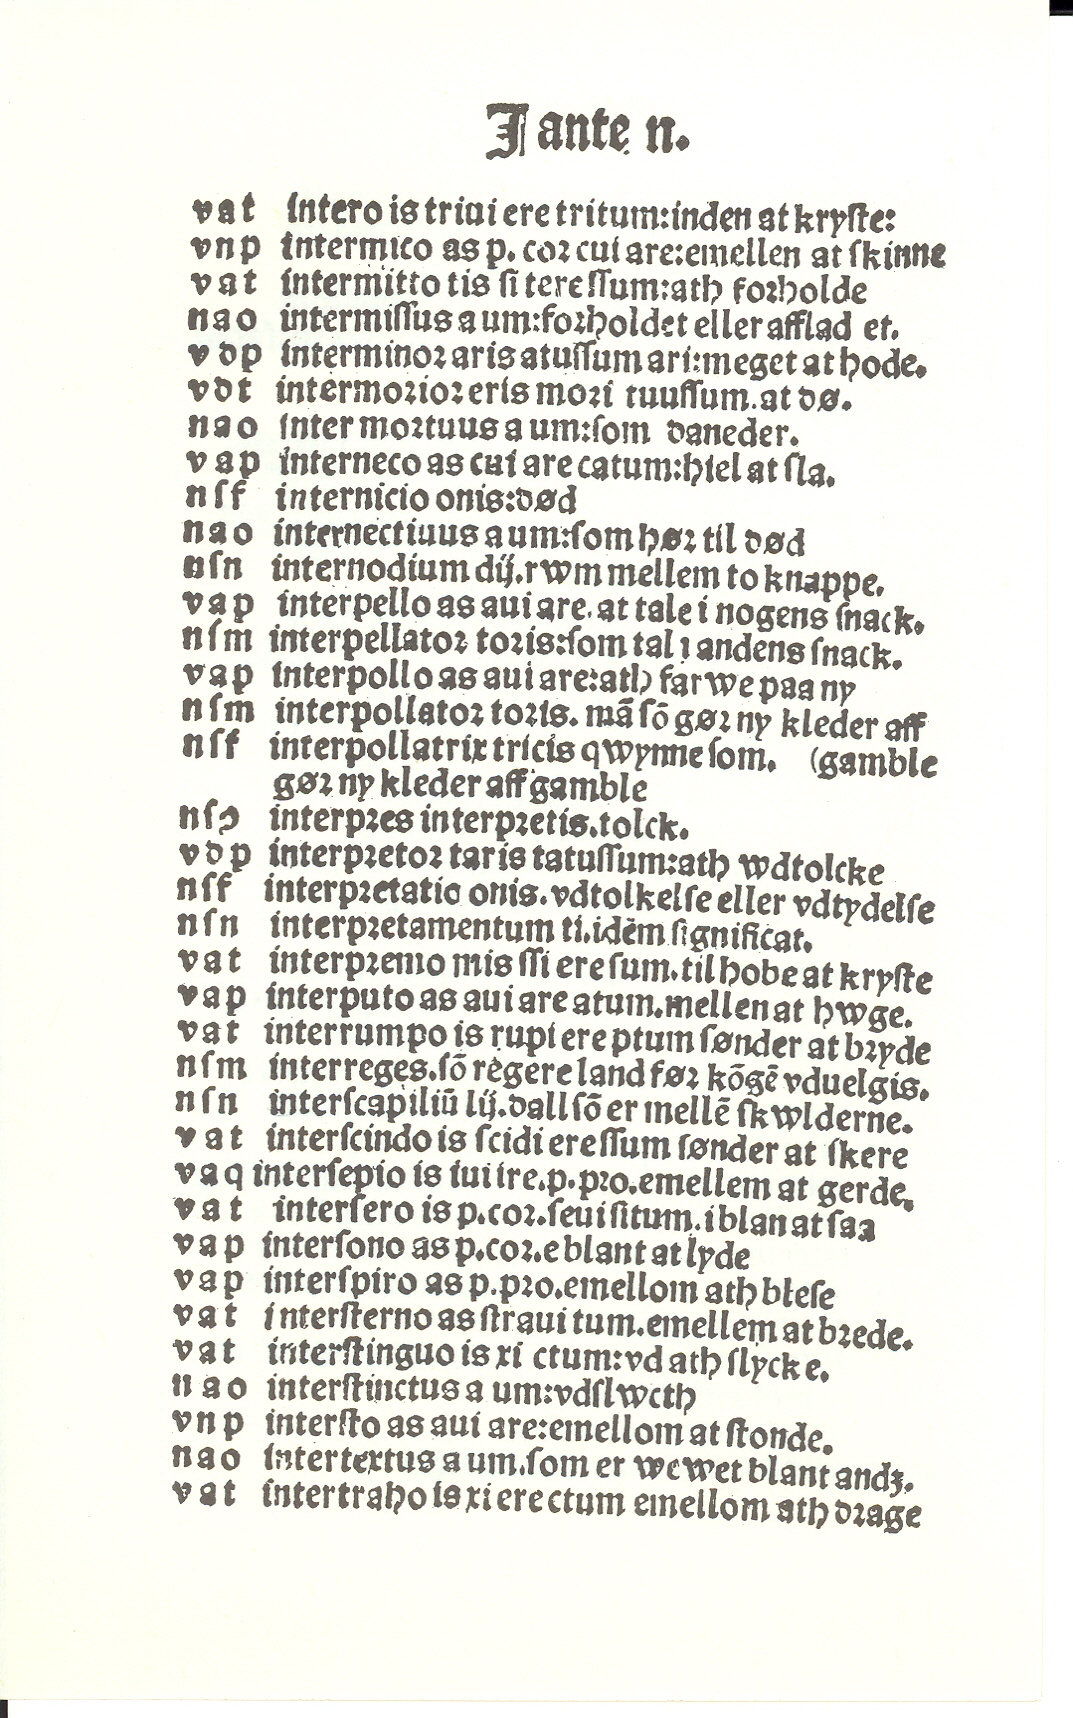 Pedersen 1510, Side: 174